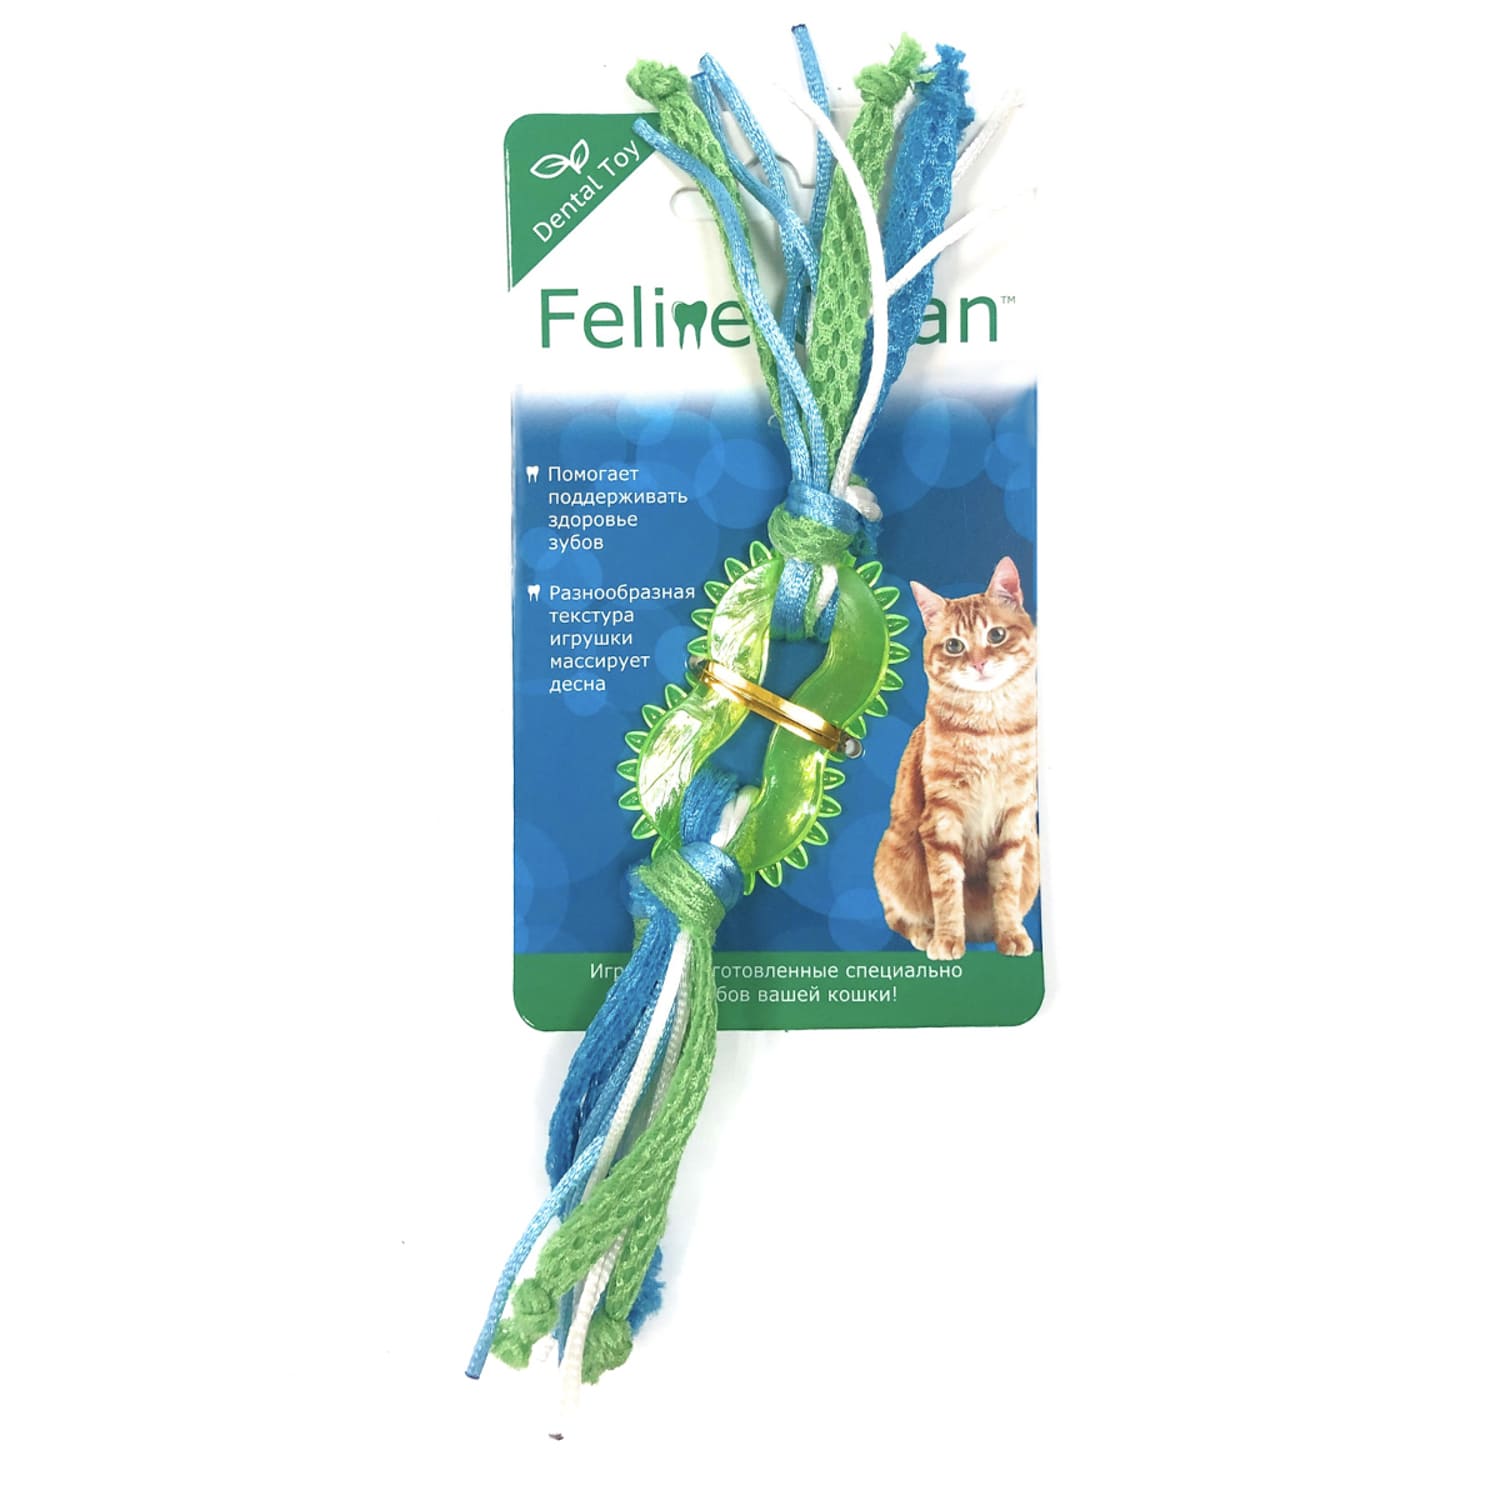 Aromadog Feline Clean игрушка для кошек Dental Колечко прорезыватель с лентами, резина